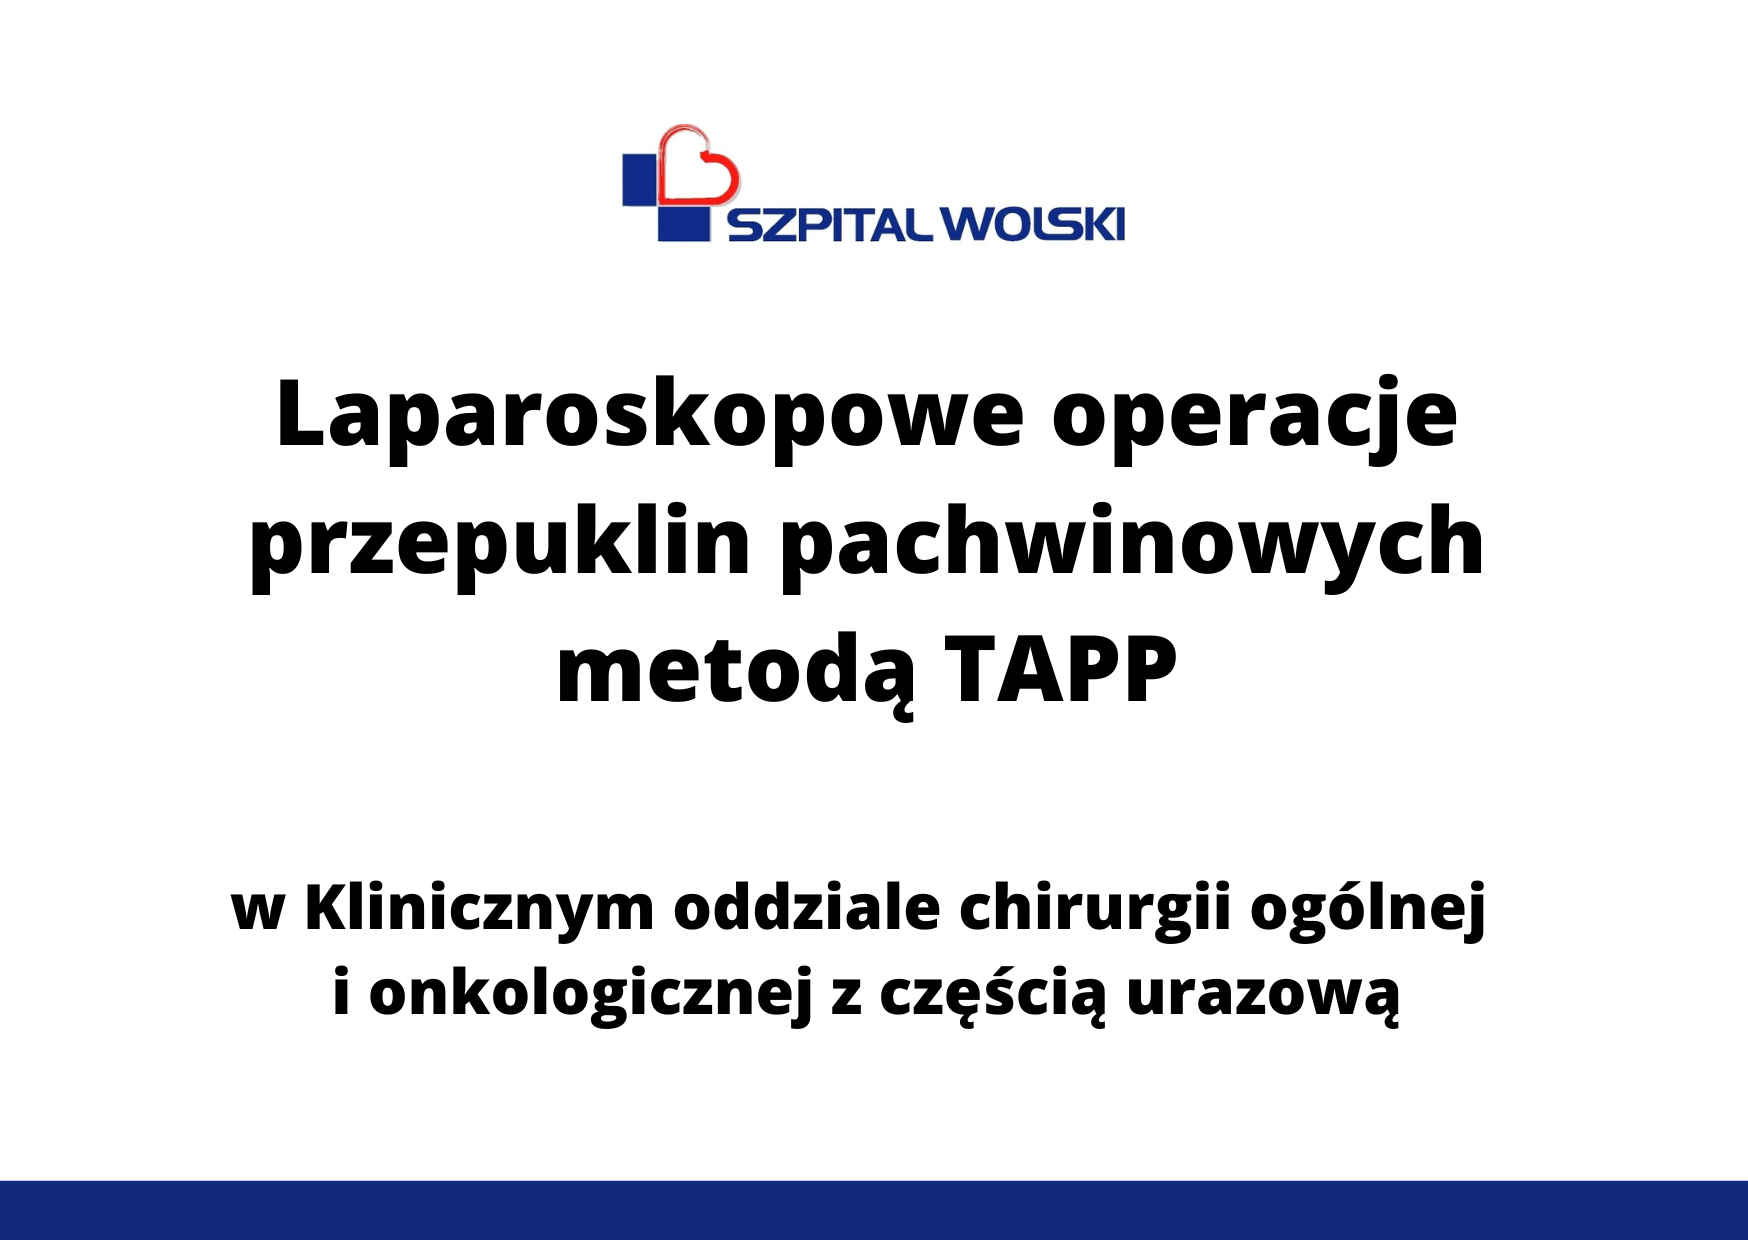 Laparoskopowe leczenie przepuklin pachwinowych metodą TAPP.